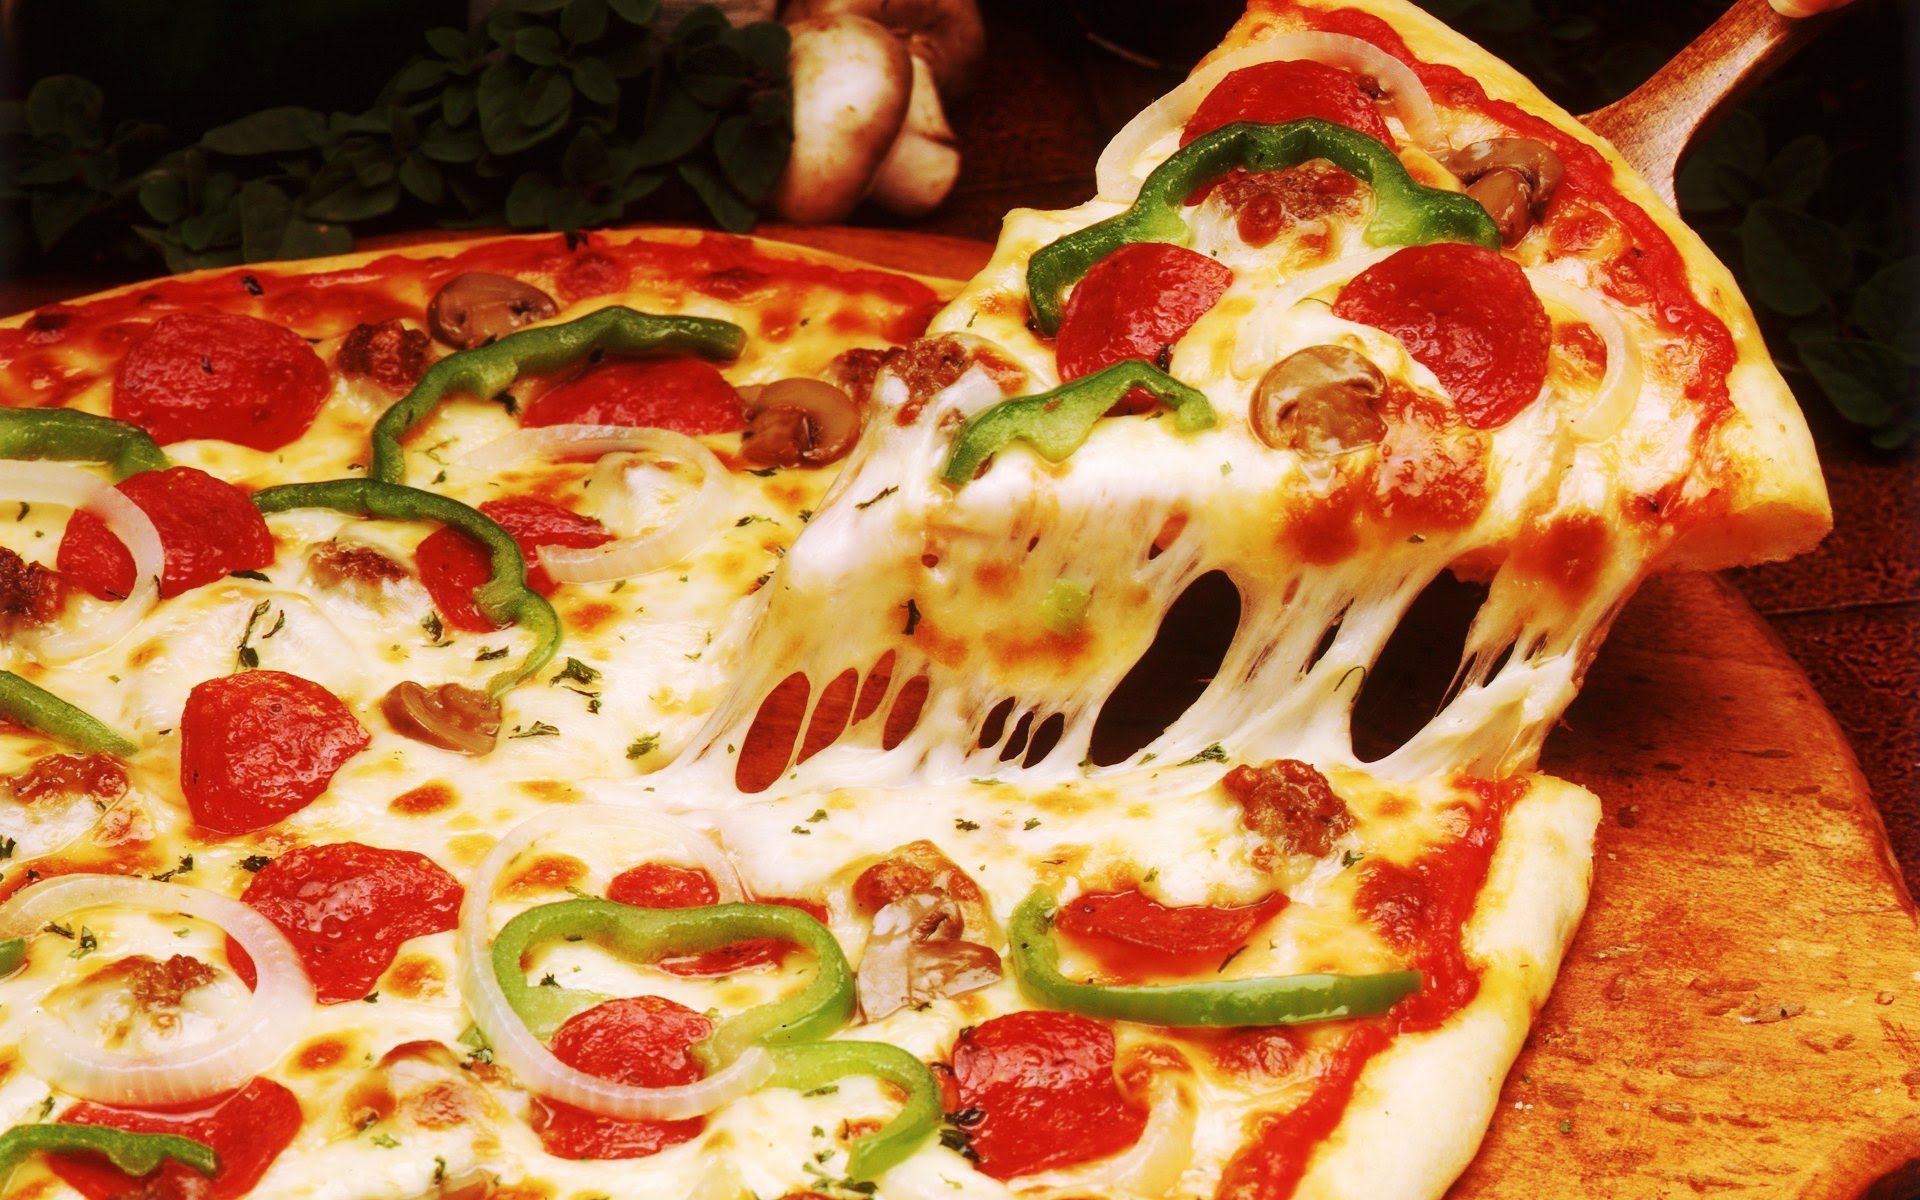 Comendo uma pizza pode ajudar natalenses a fazerem um filme